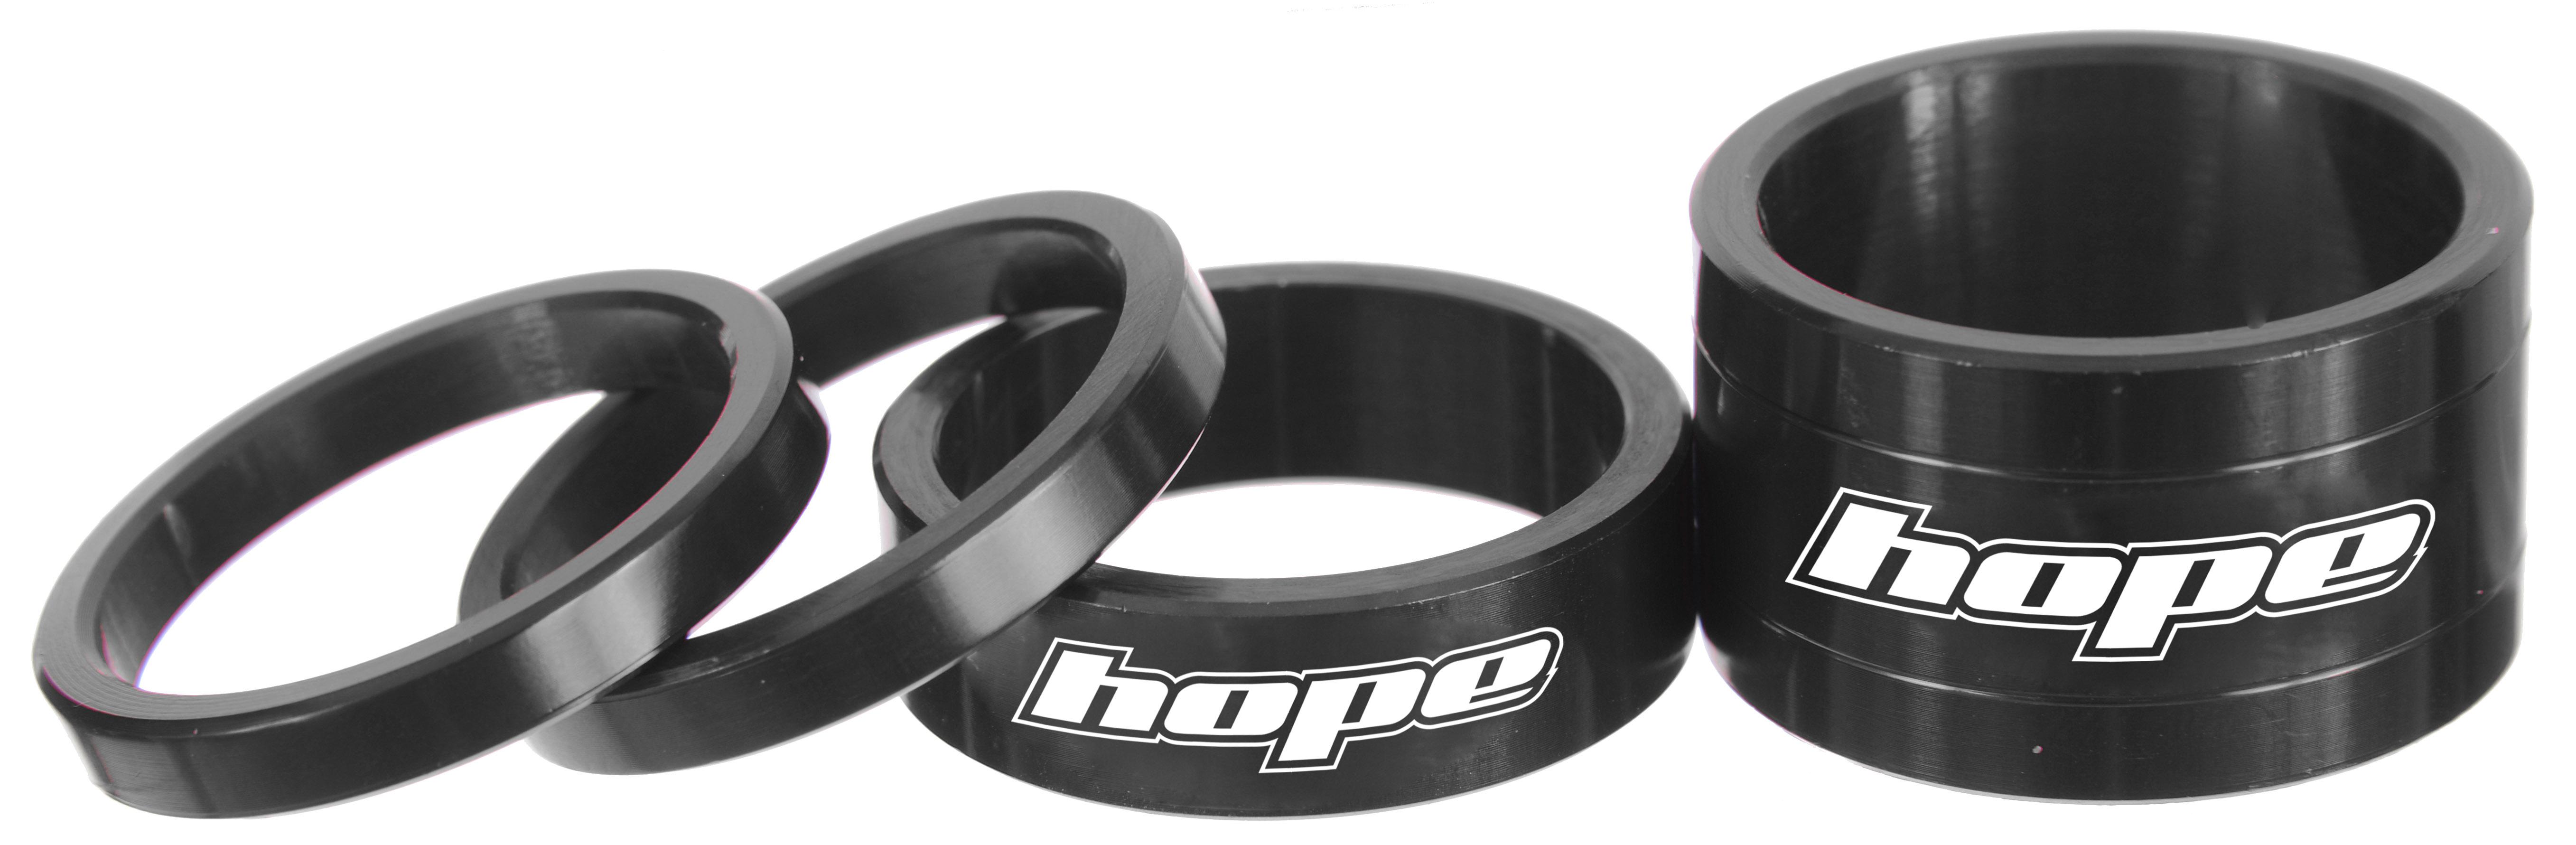 Hope Space Doctor Headset Spacers - Black